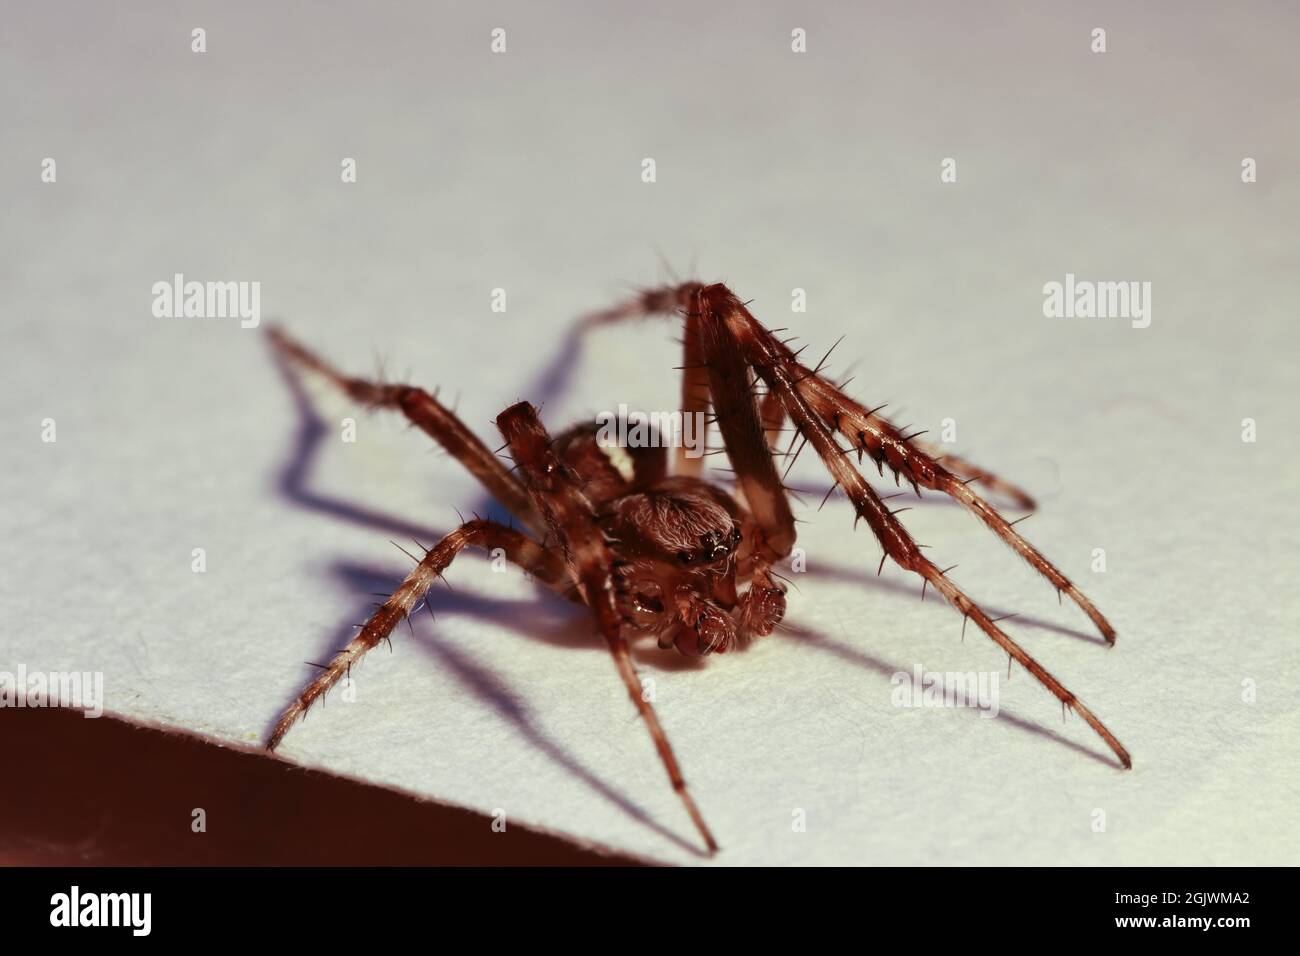 Small live European garden spider. Stock Photo